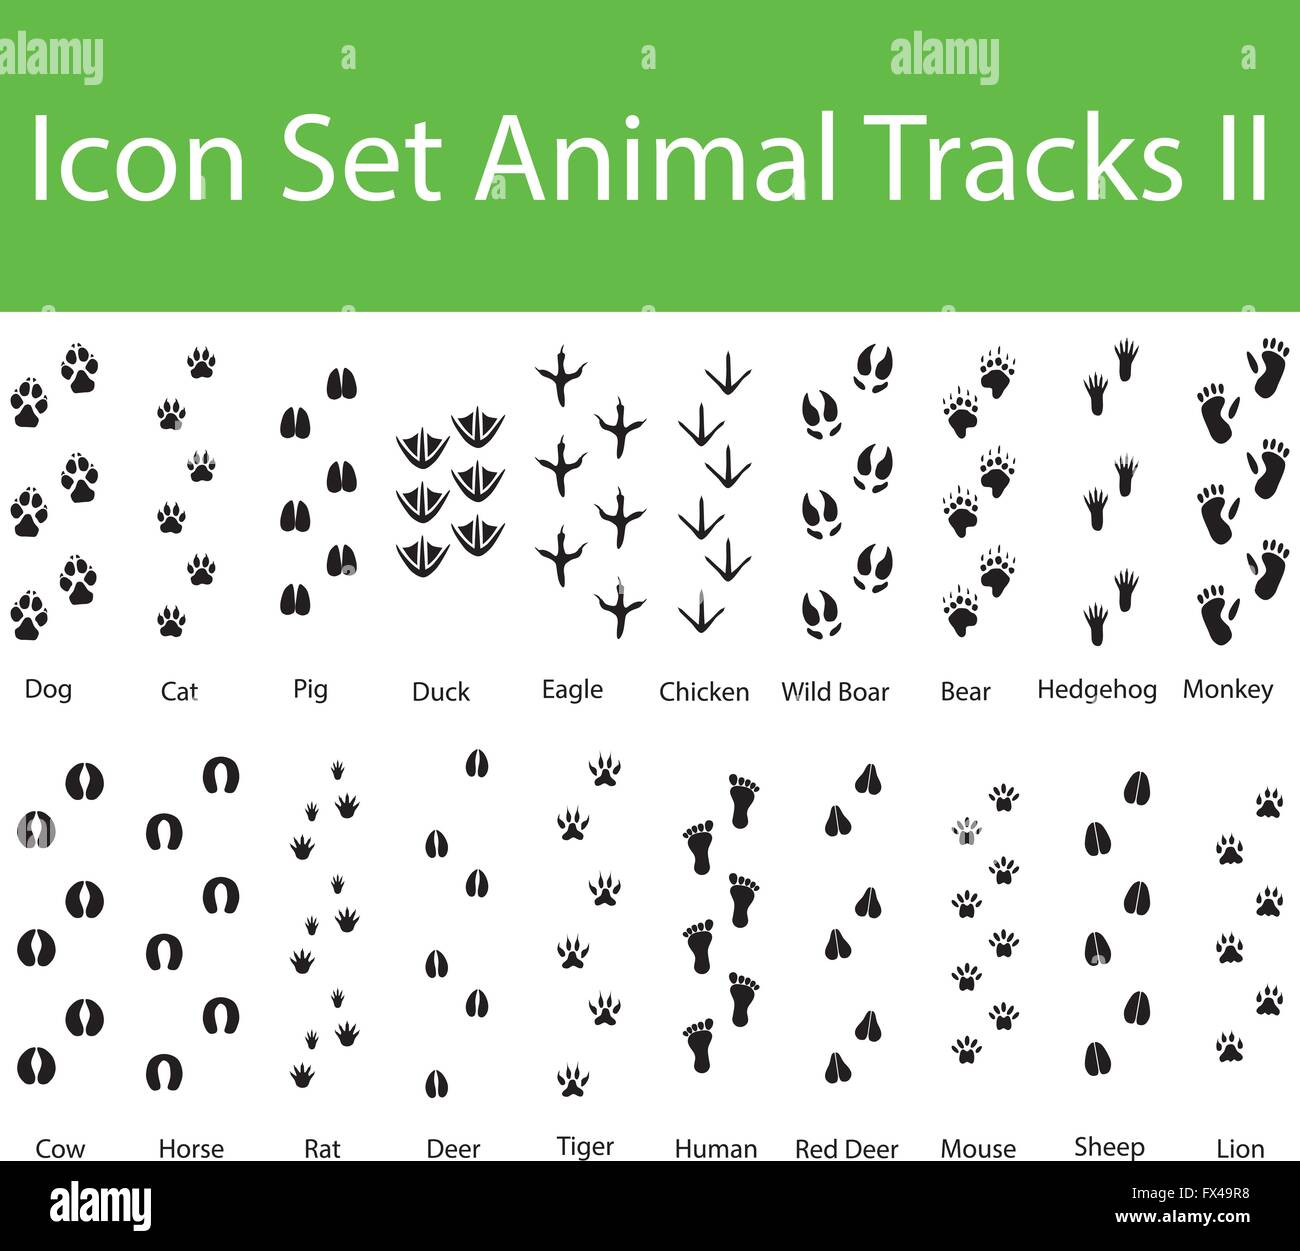 Icon Set Animal Tracks II mit 20 Icons für den kreativen Einsatz in Grafik-design Stock Vektor